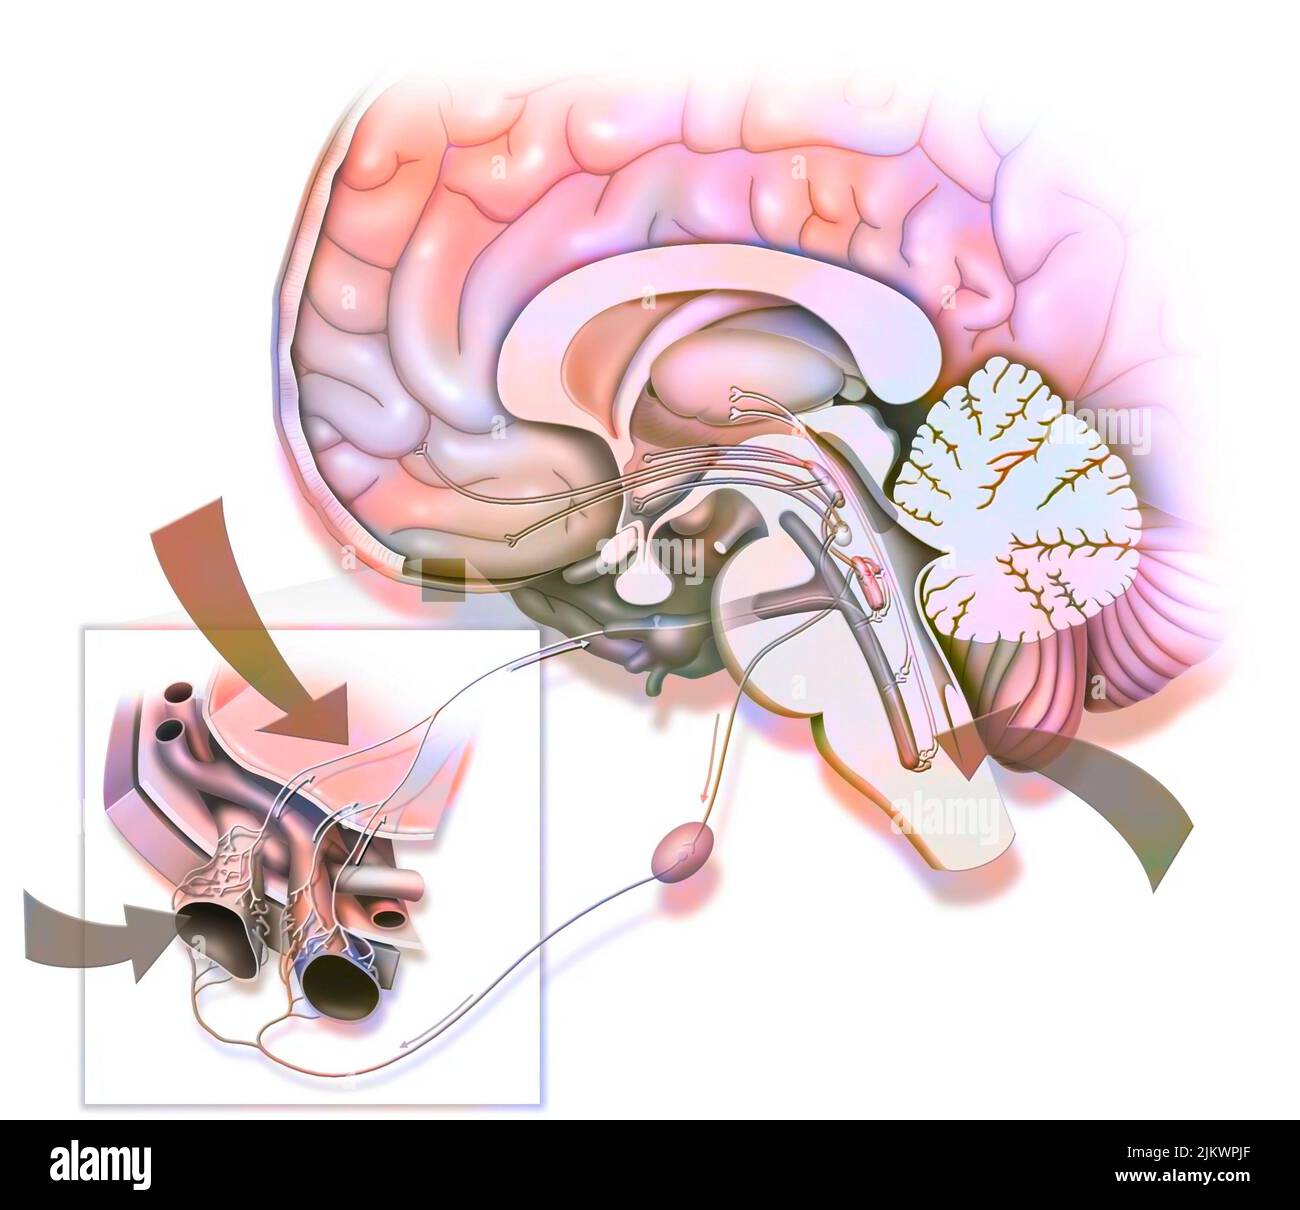 Si dice che l'emicrania sia causata dalla stimolazione del nervo trigeminale. Foto Stock